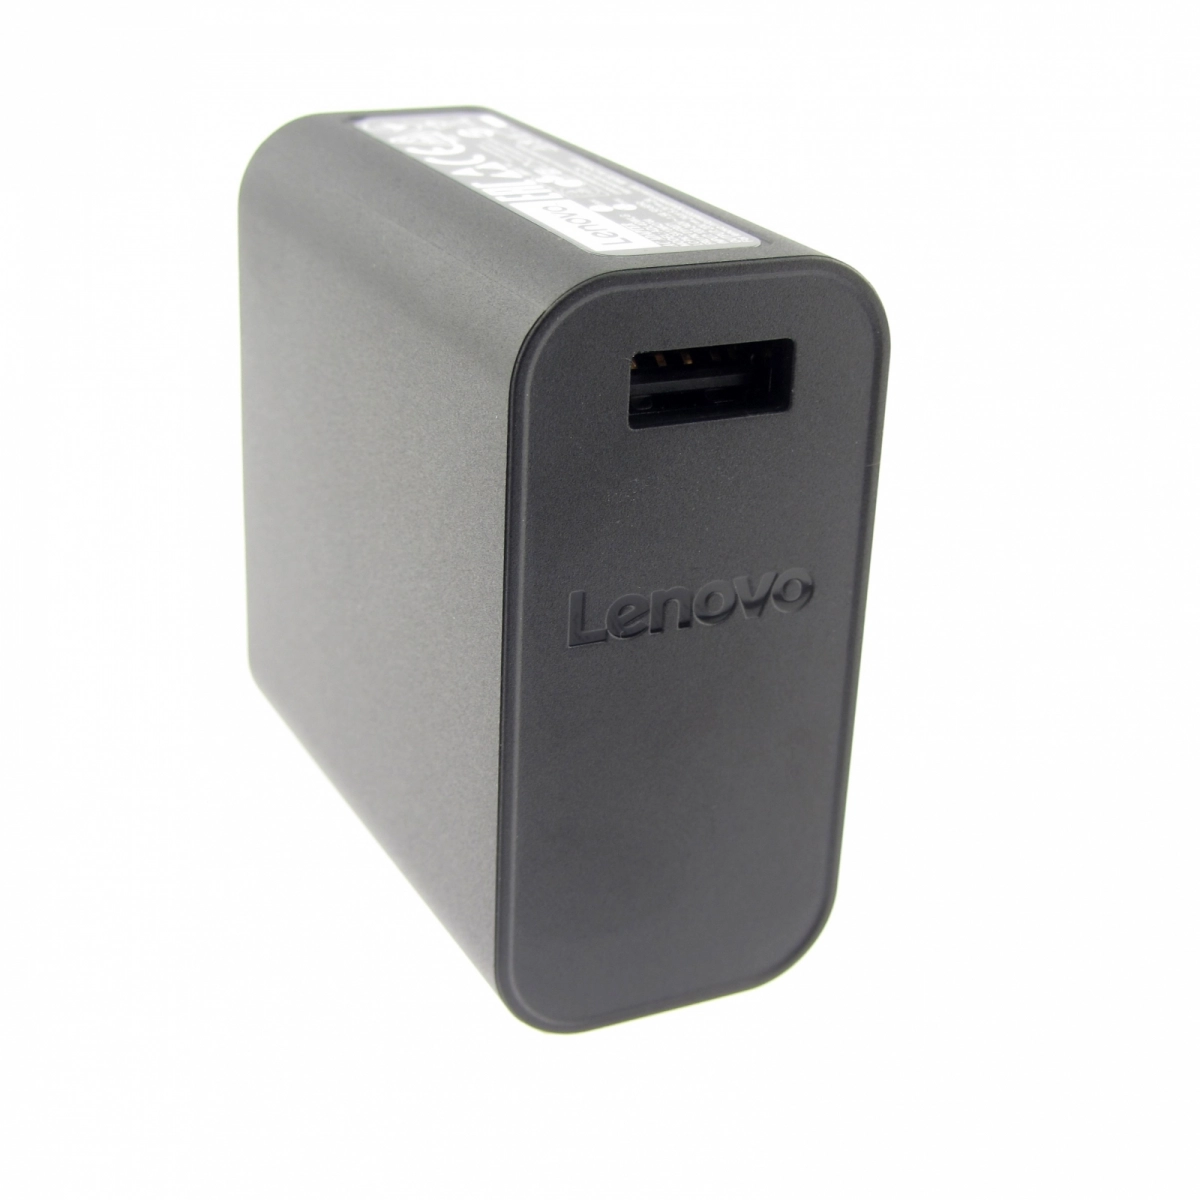 Original Netzteil für LENOVO ADL40WDA, 20V, 2A, Stecker USB, ohne USB-Kabel